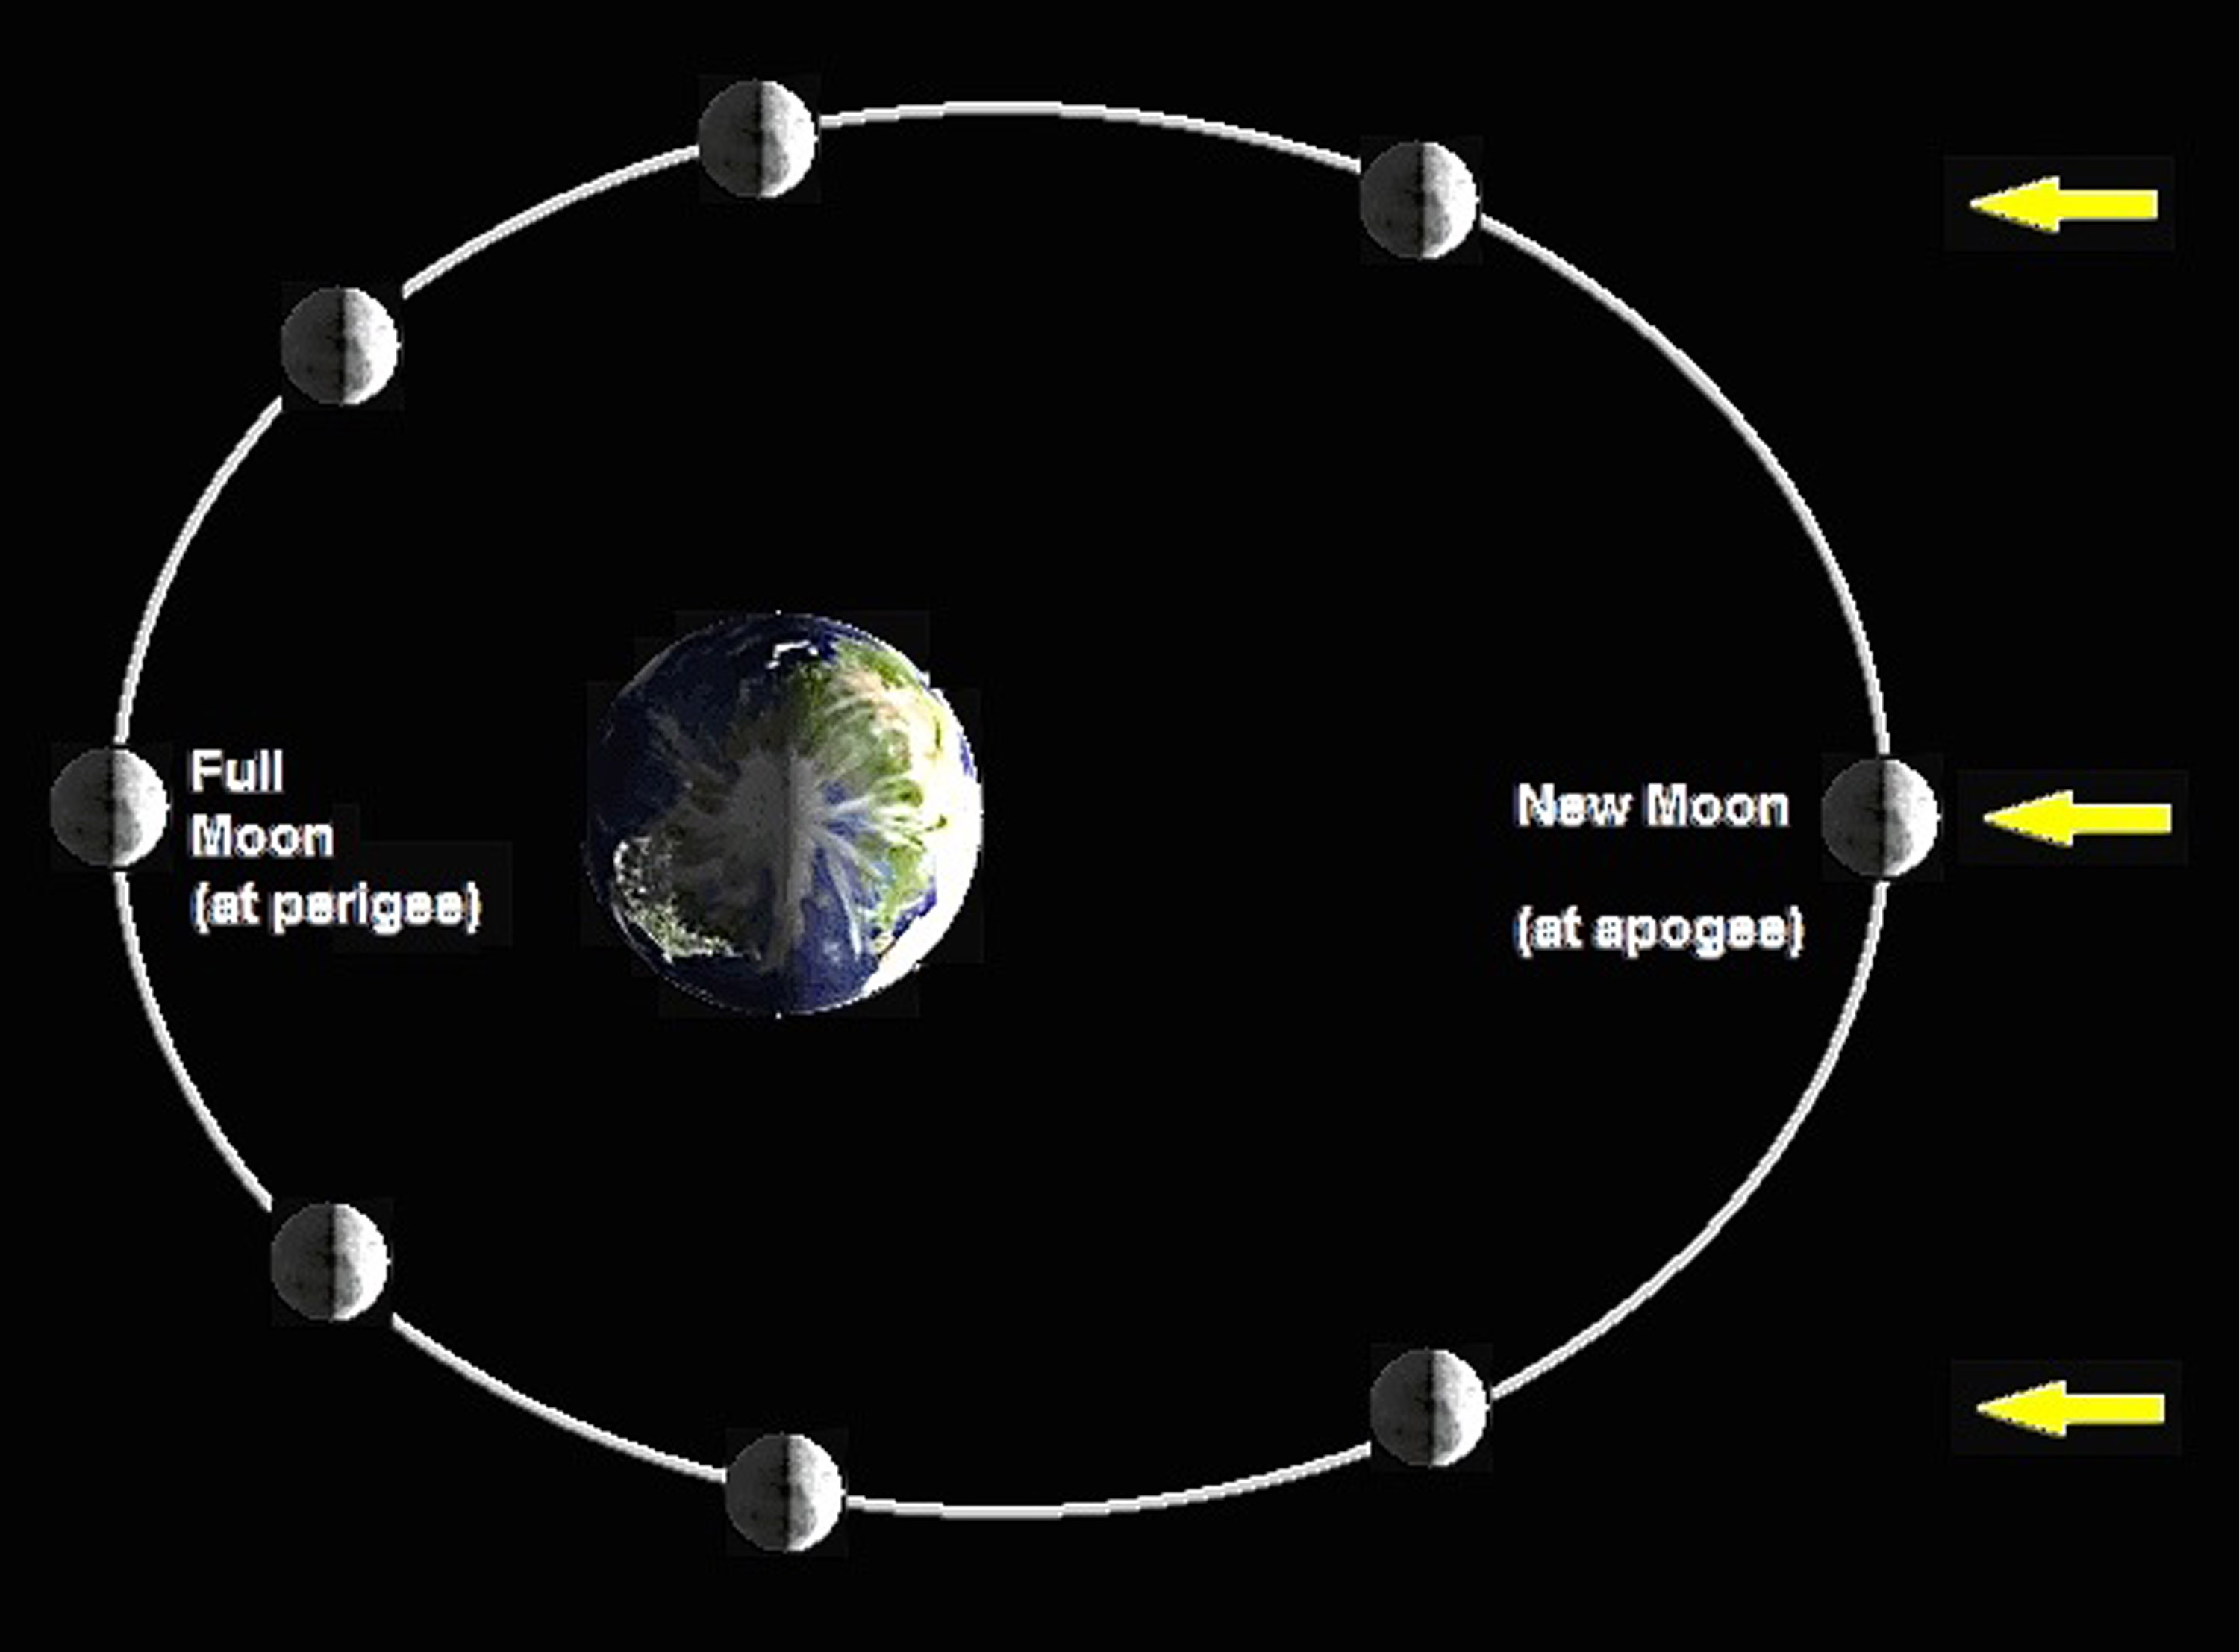 Время вращения по орбите луны